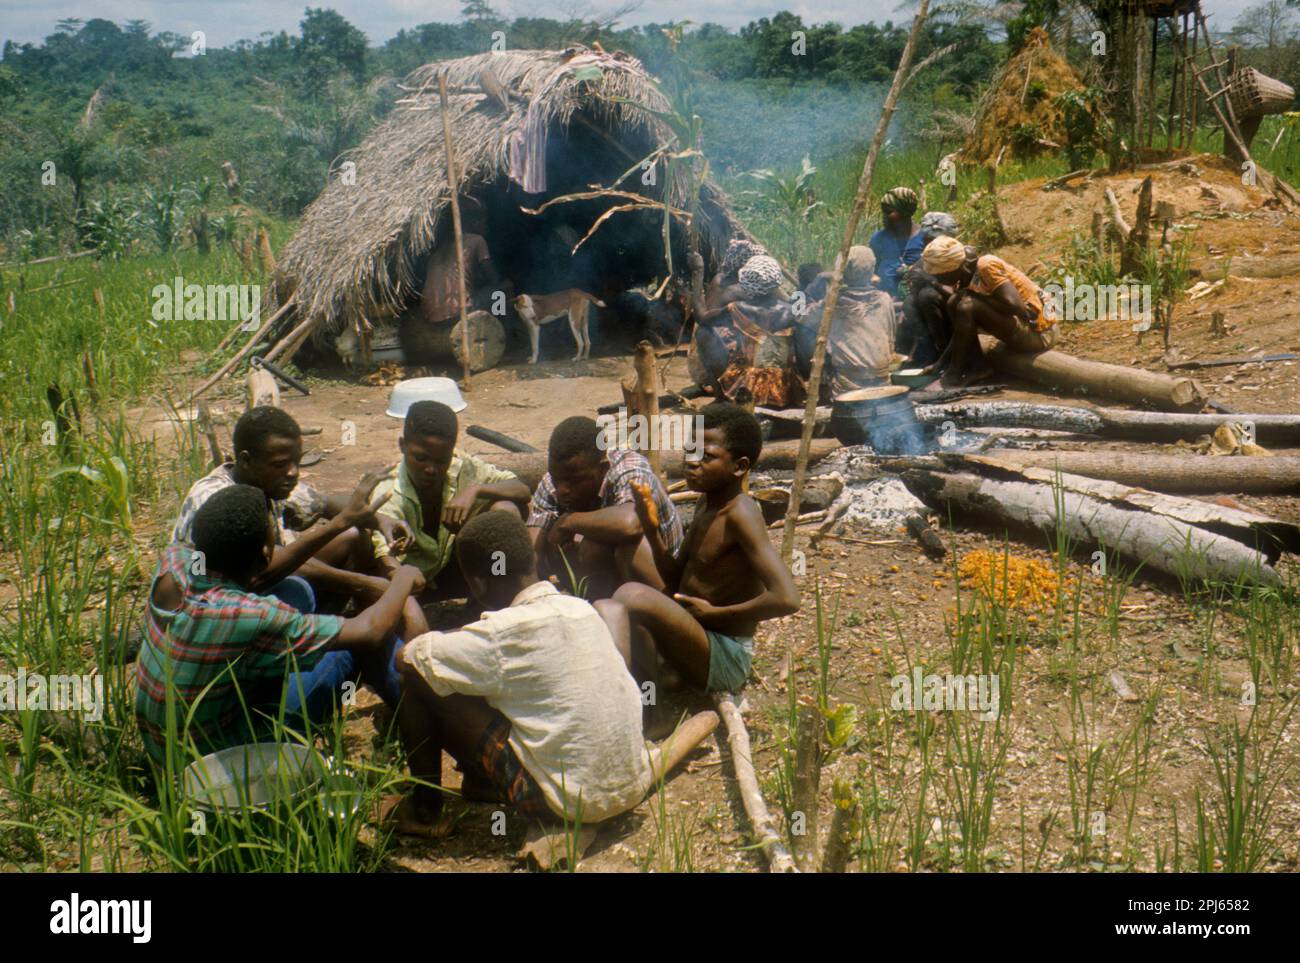 Afrique, Libéria. Repas communal sur le terrain par des hommes et des femmes Kpelle, formant des groupes séparés. La langue kcelle appartient à la branche de Mande (ou sous-famille) de la famille Niger-Congo Banque D'Images